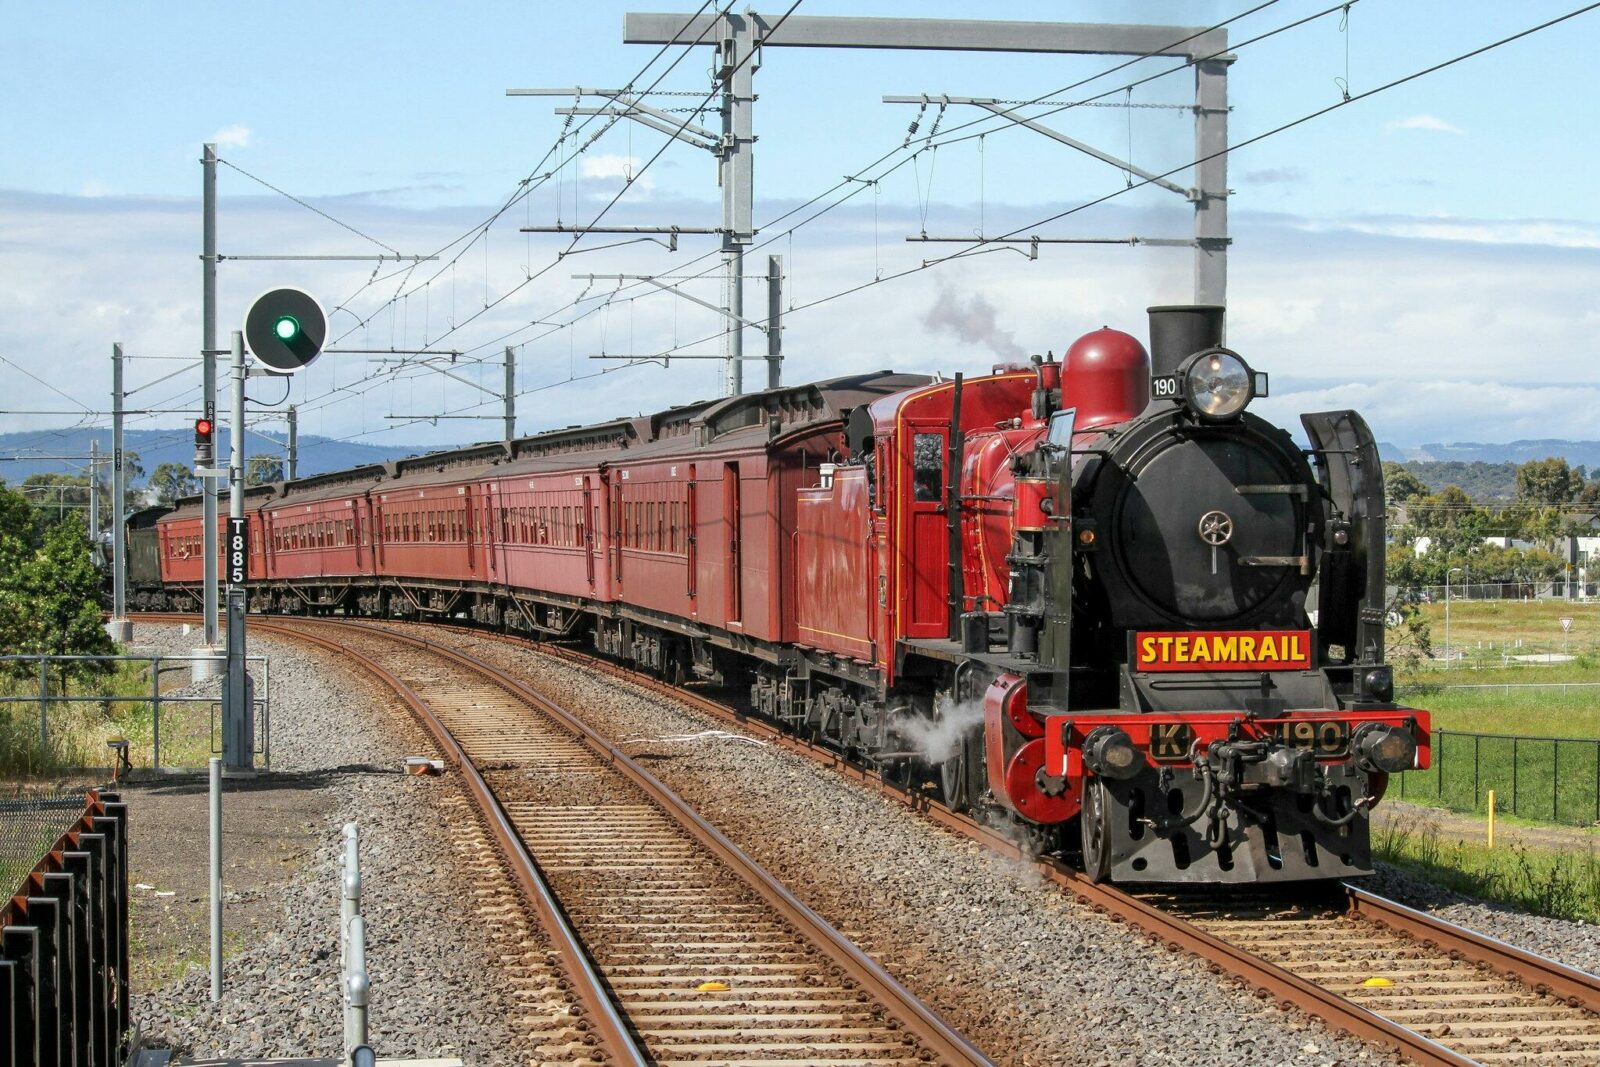 Steamrail Victoria Locomotive